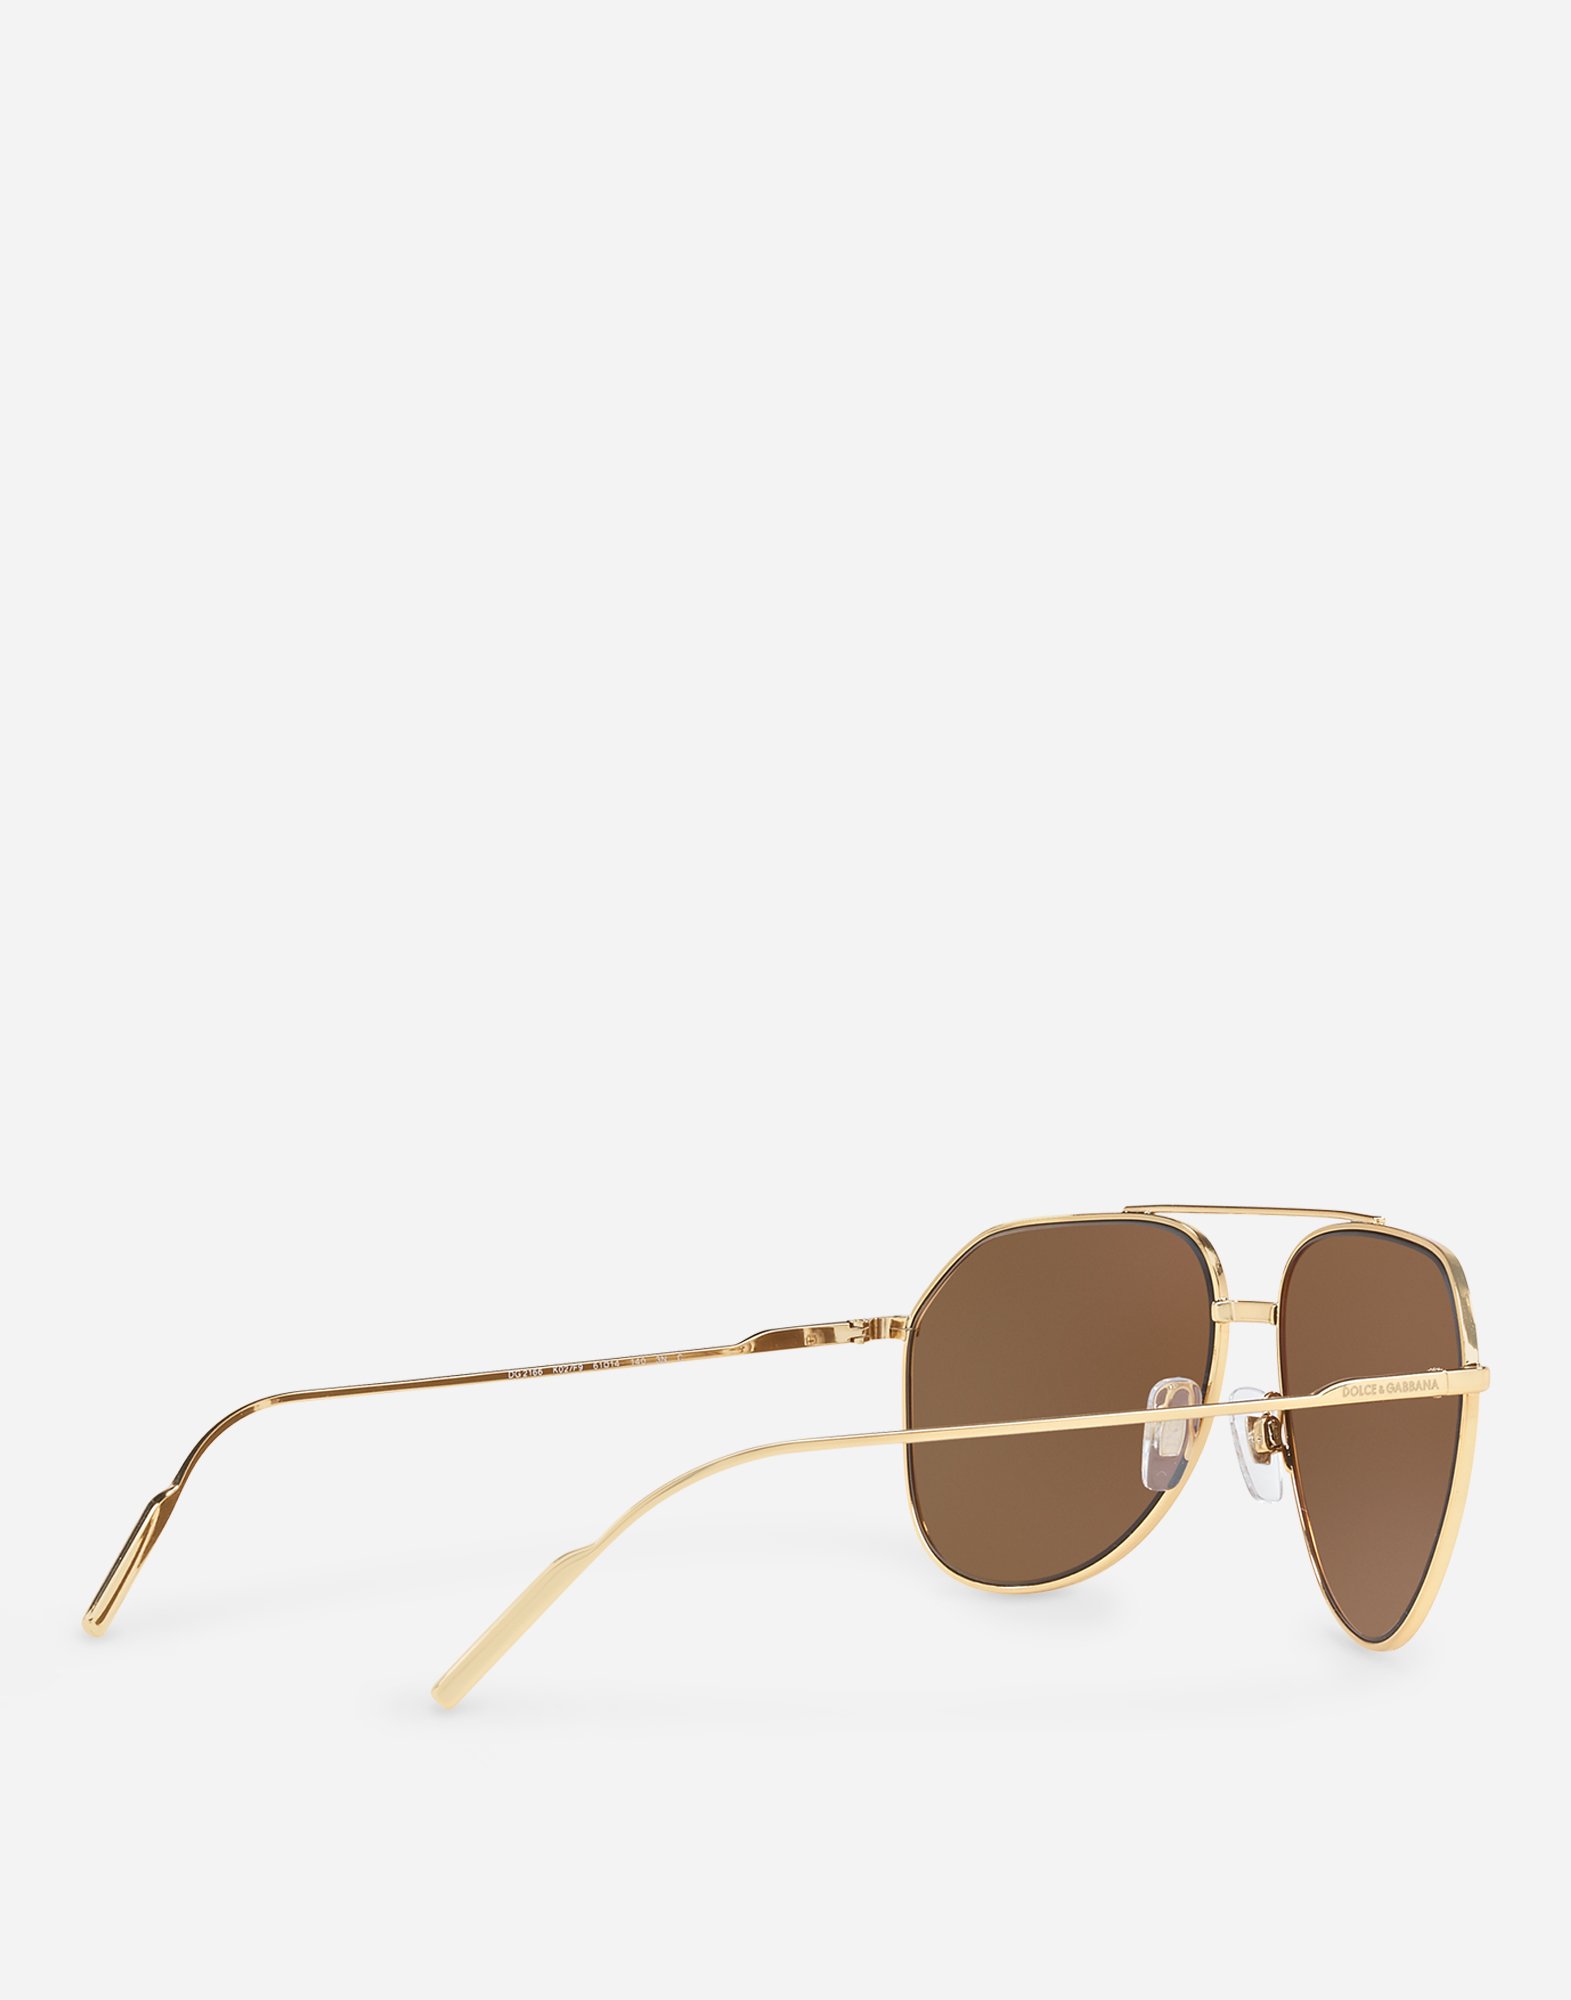 dolce gabbana gold edition sunglasses